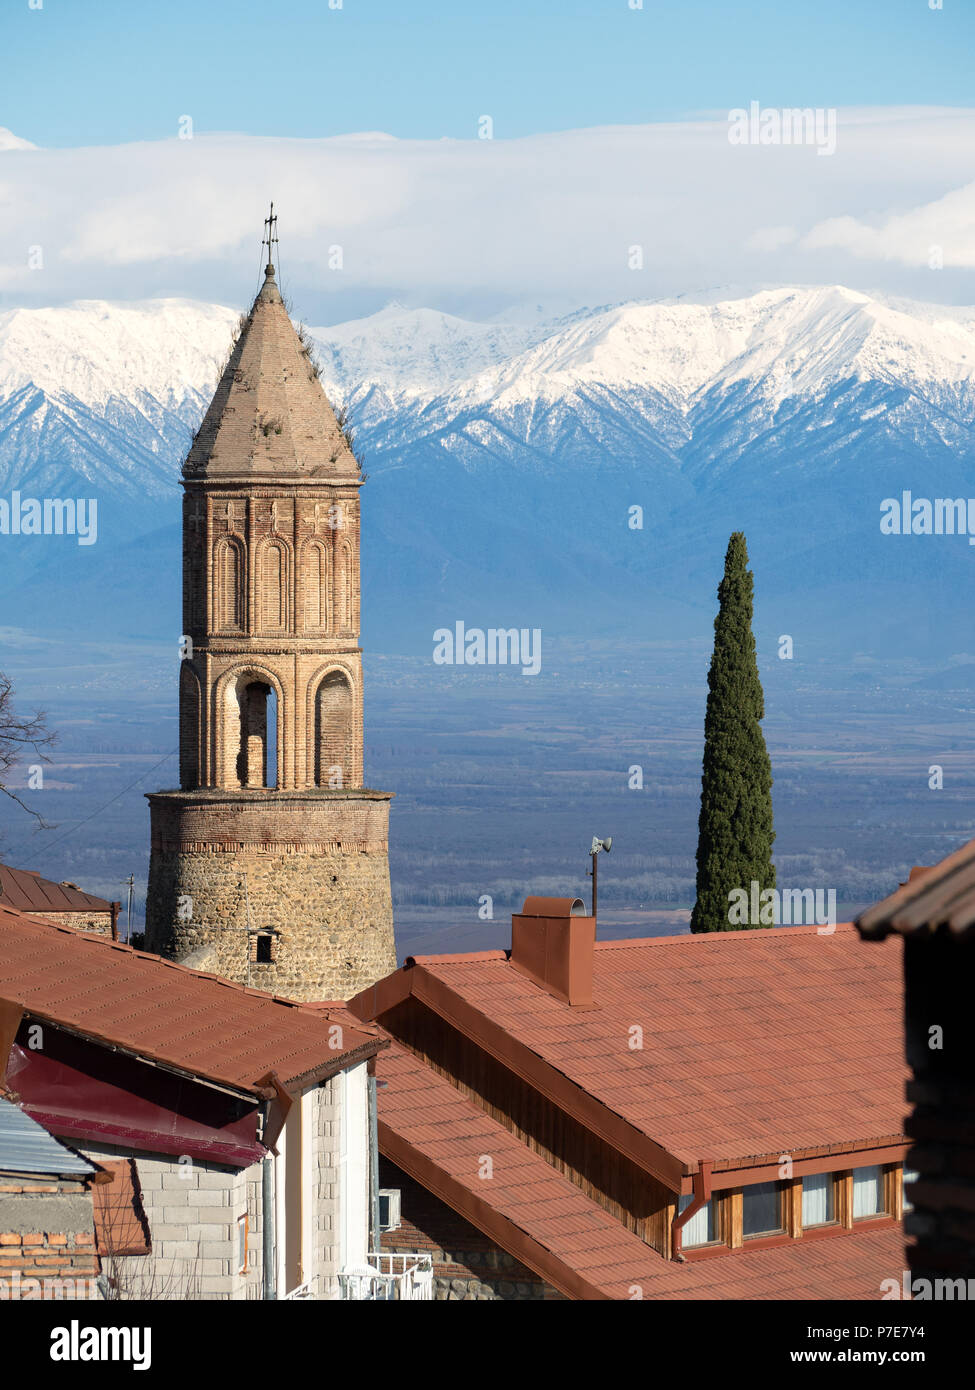 San Giorgio il campanile e il Caucaso montagne innevate, Sighnaghi, regione di Kakheti, Georgia Foto Stock